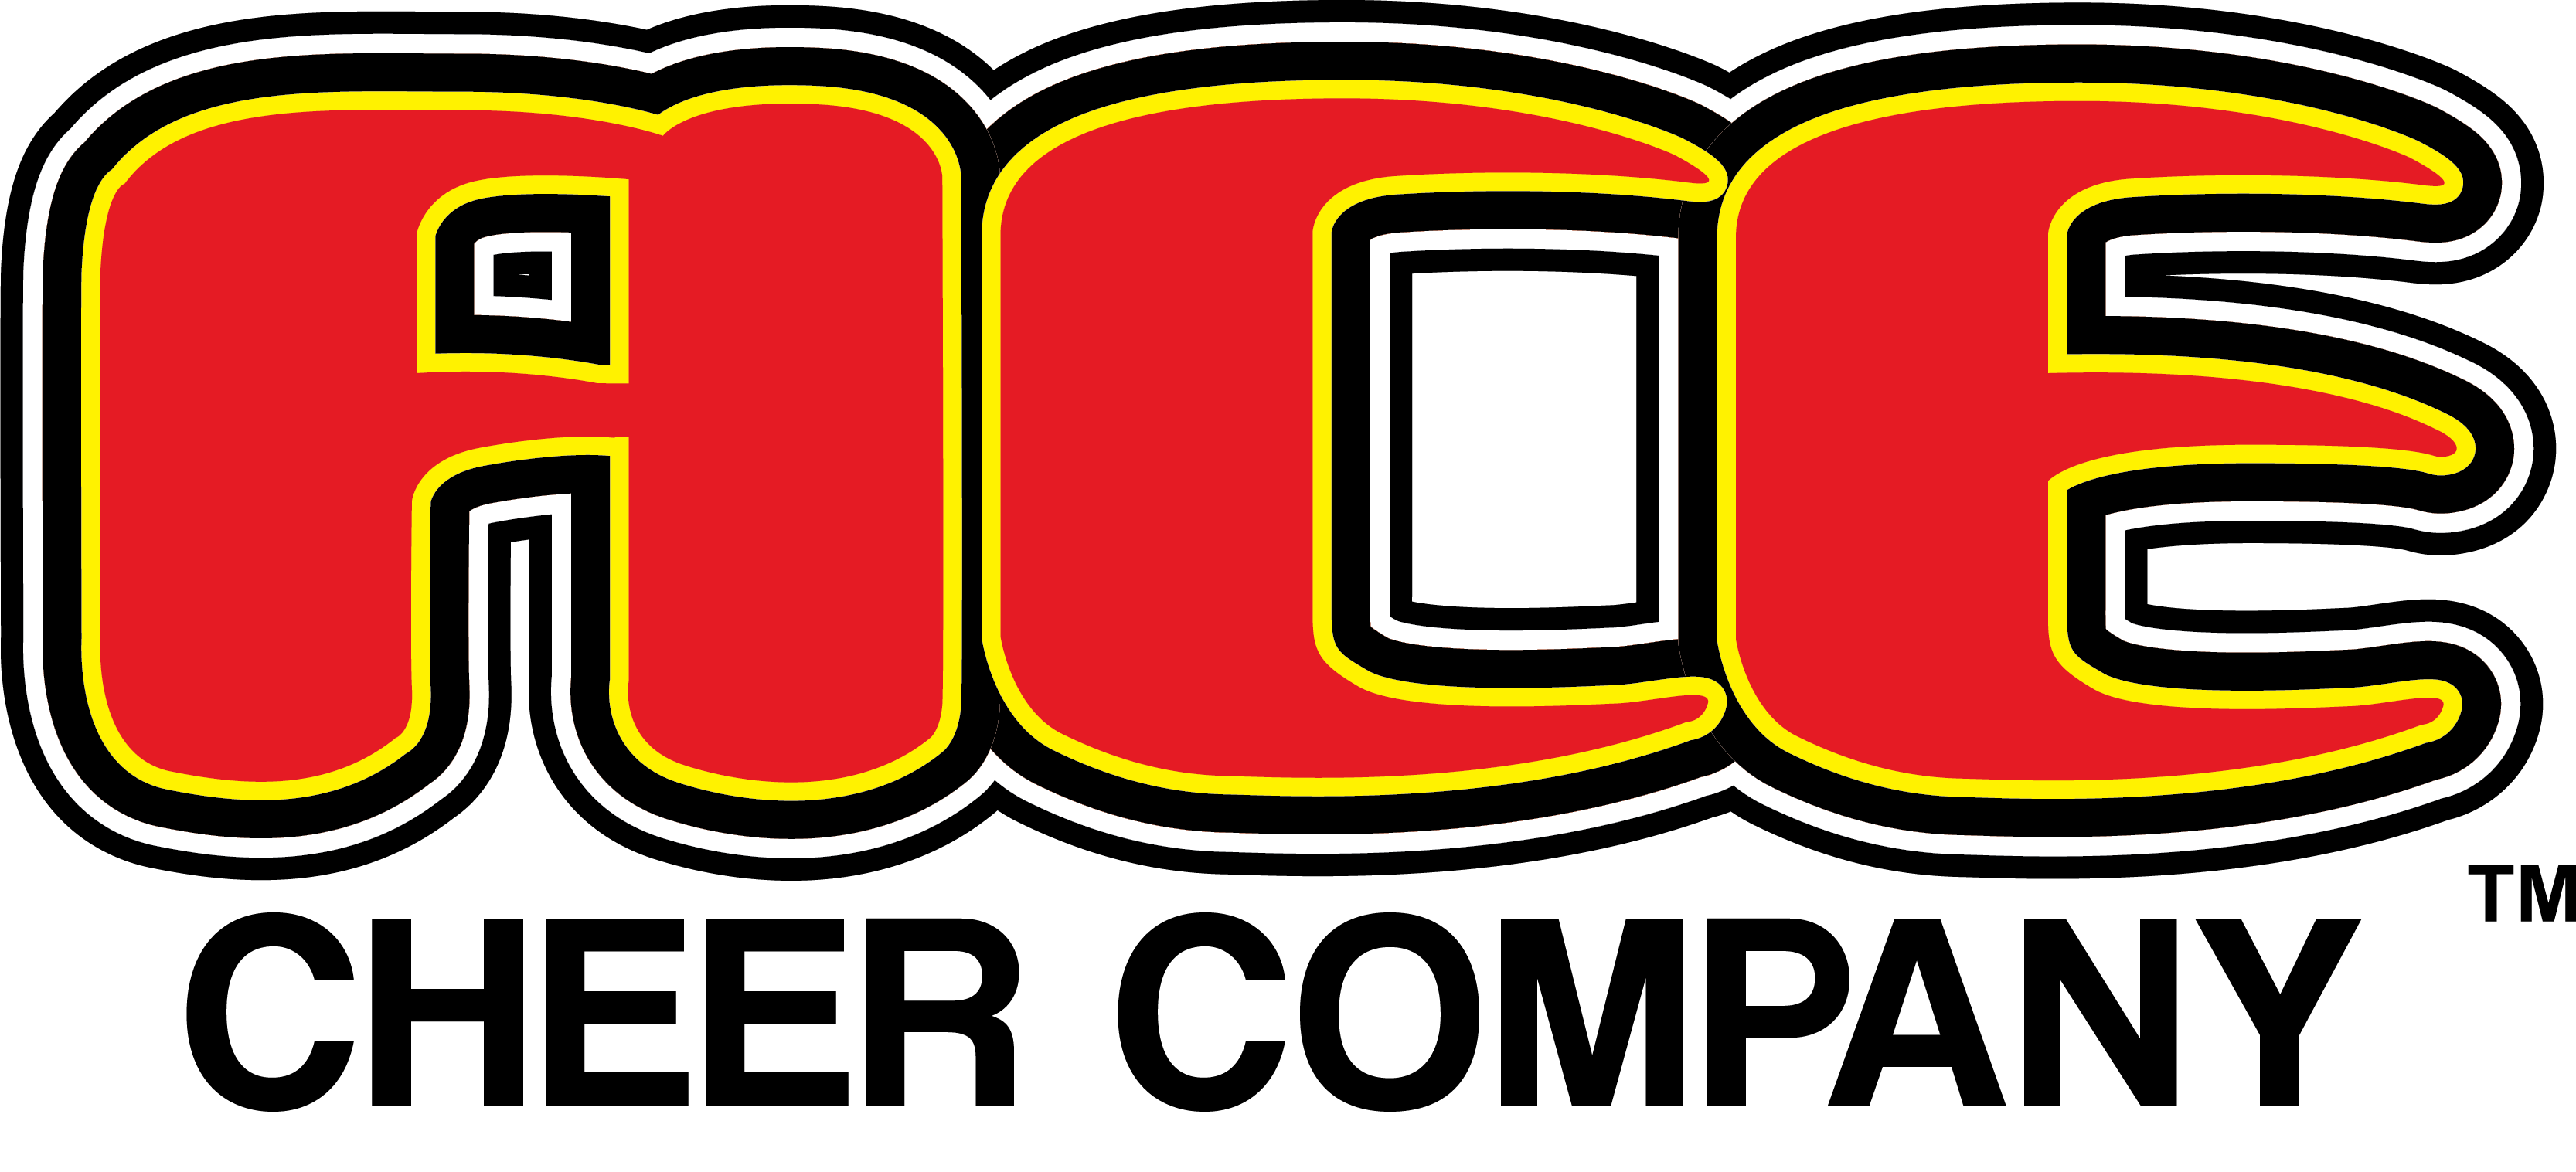 ACE Cheer Company TM Logo (1)